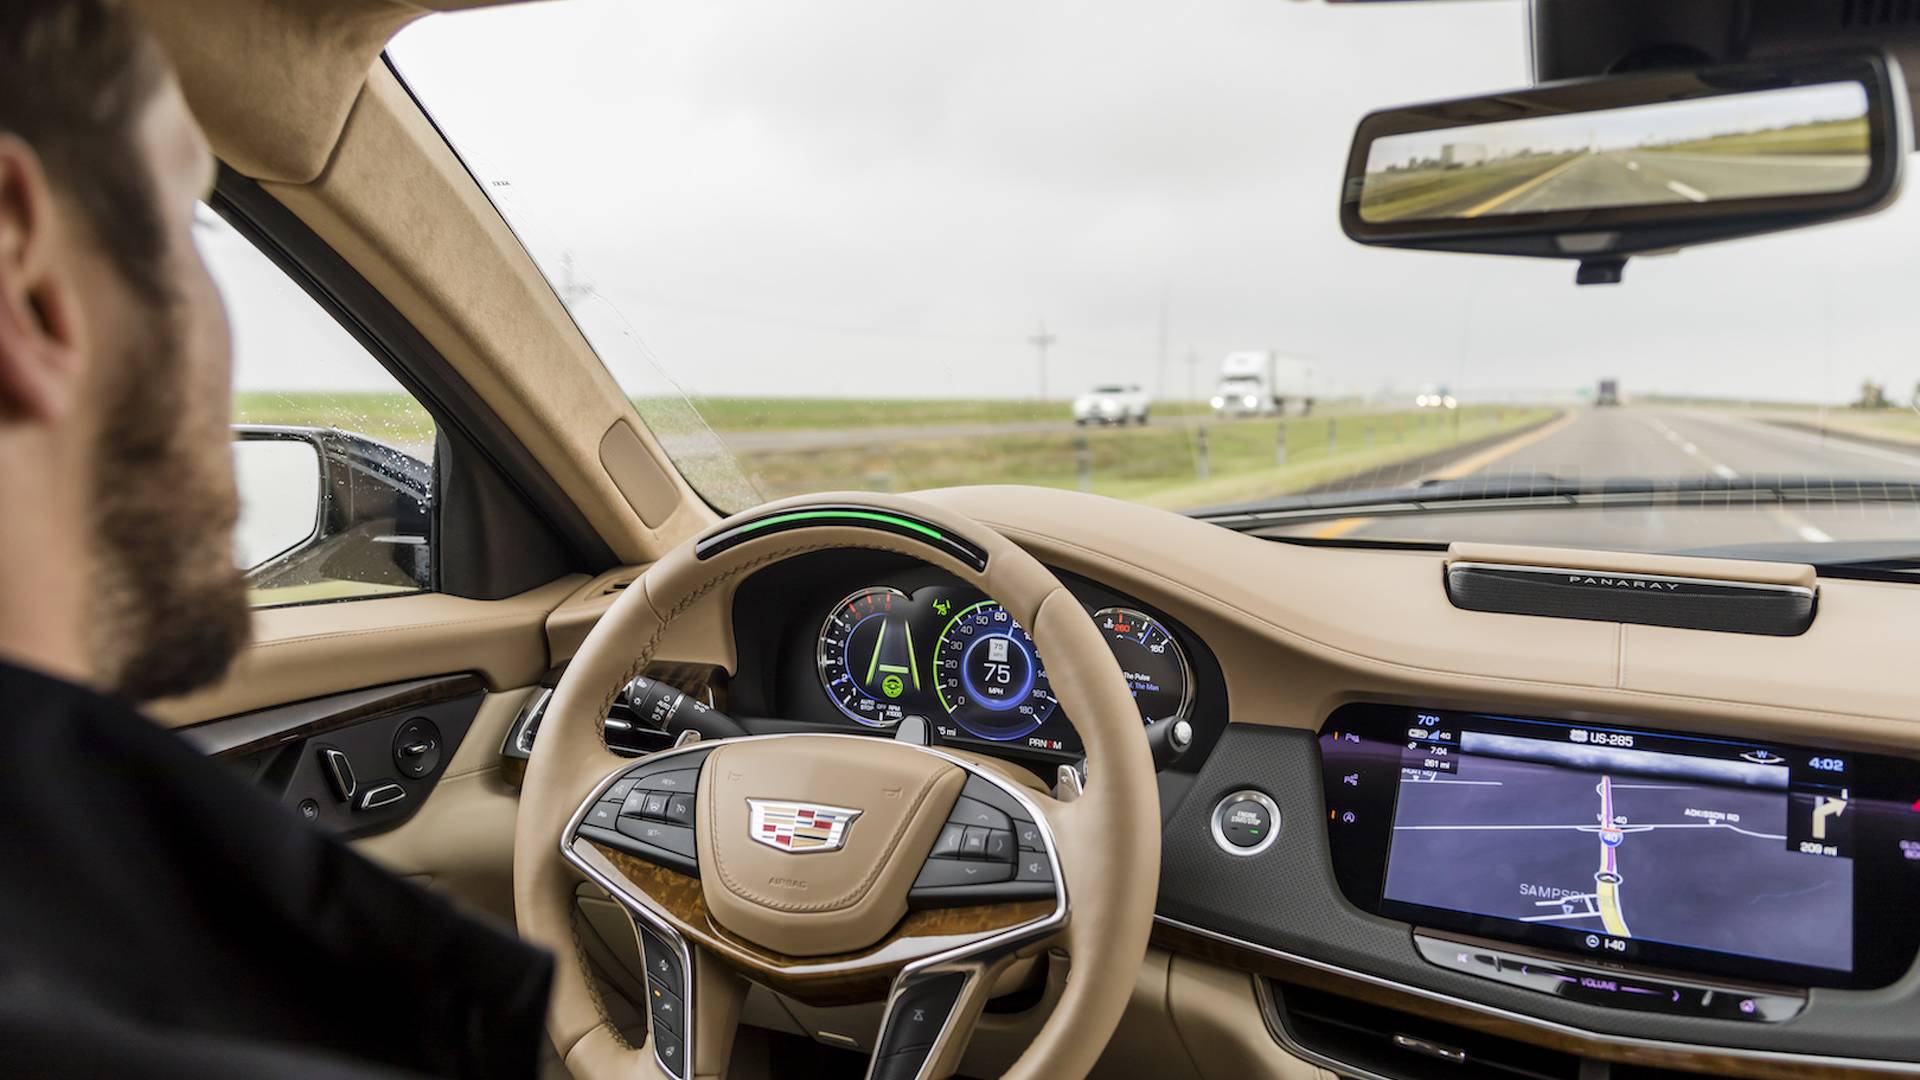 Cadillac'ın otonom sürüş sistemi Tesla’nın Autopilot teknolojisini gölgede bıraktı